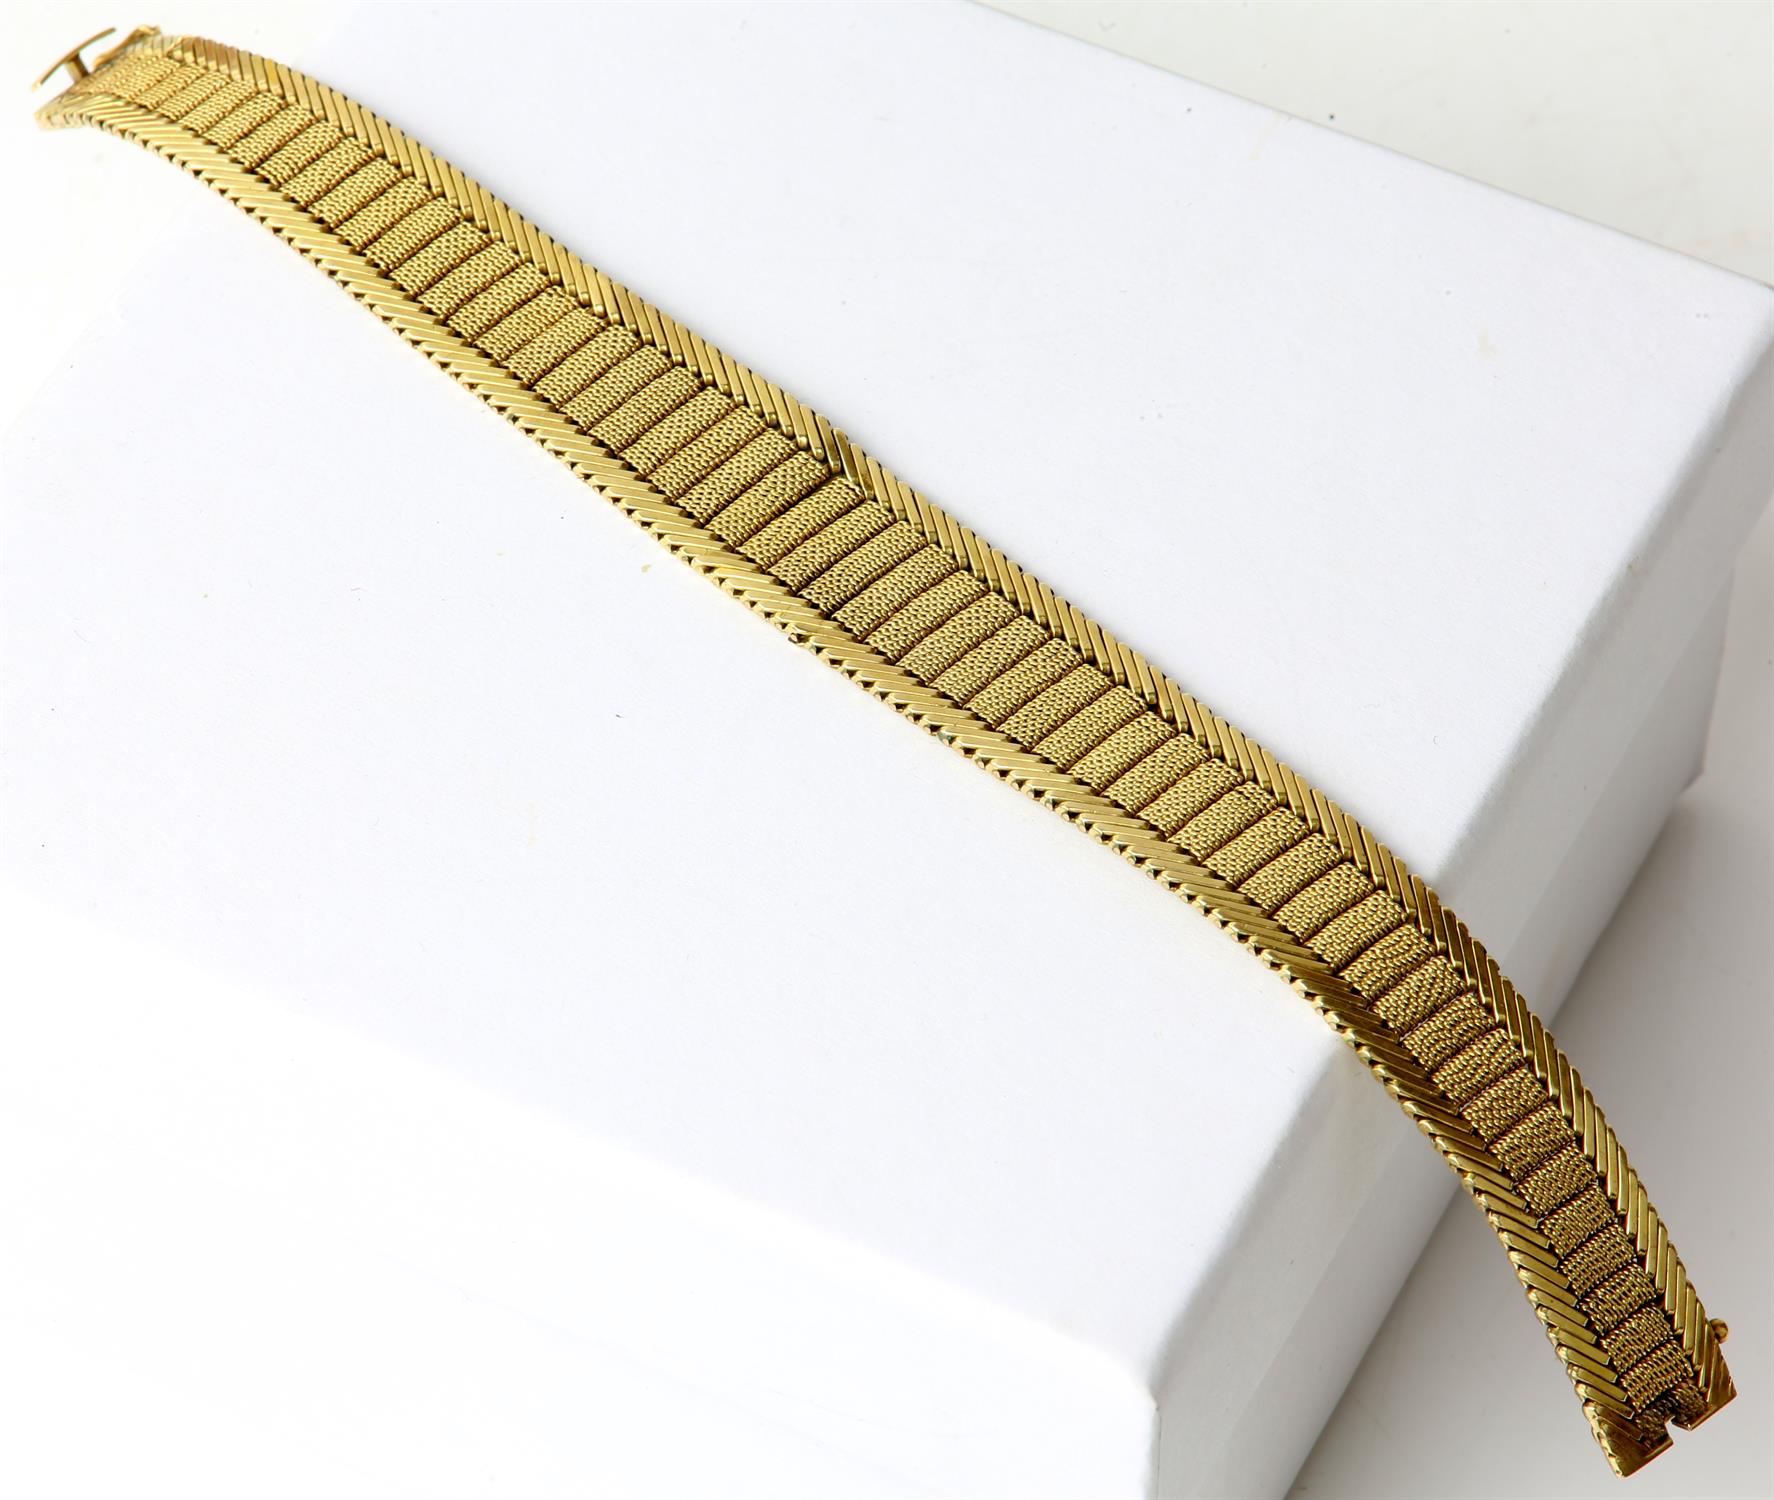 Fancy link gold bracelet, a tapered mesh panel design with diagonal bar design edging, - Image 3 of 4